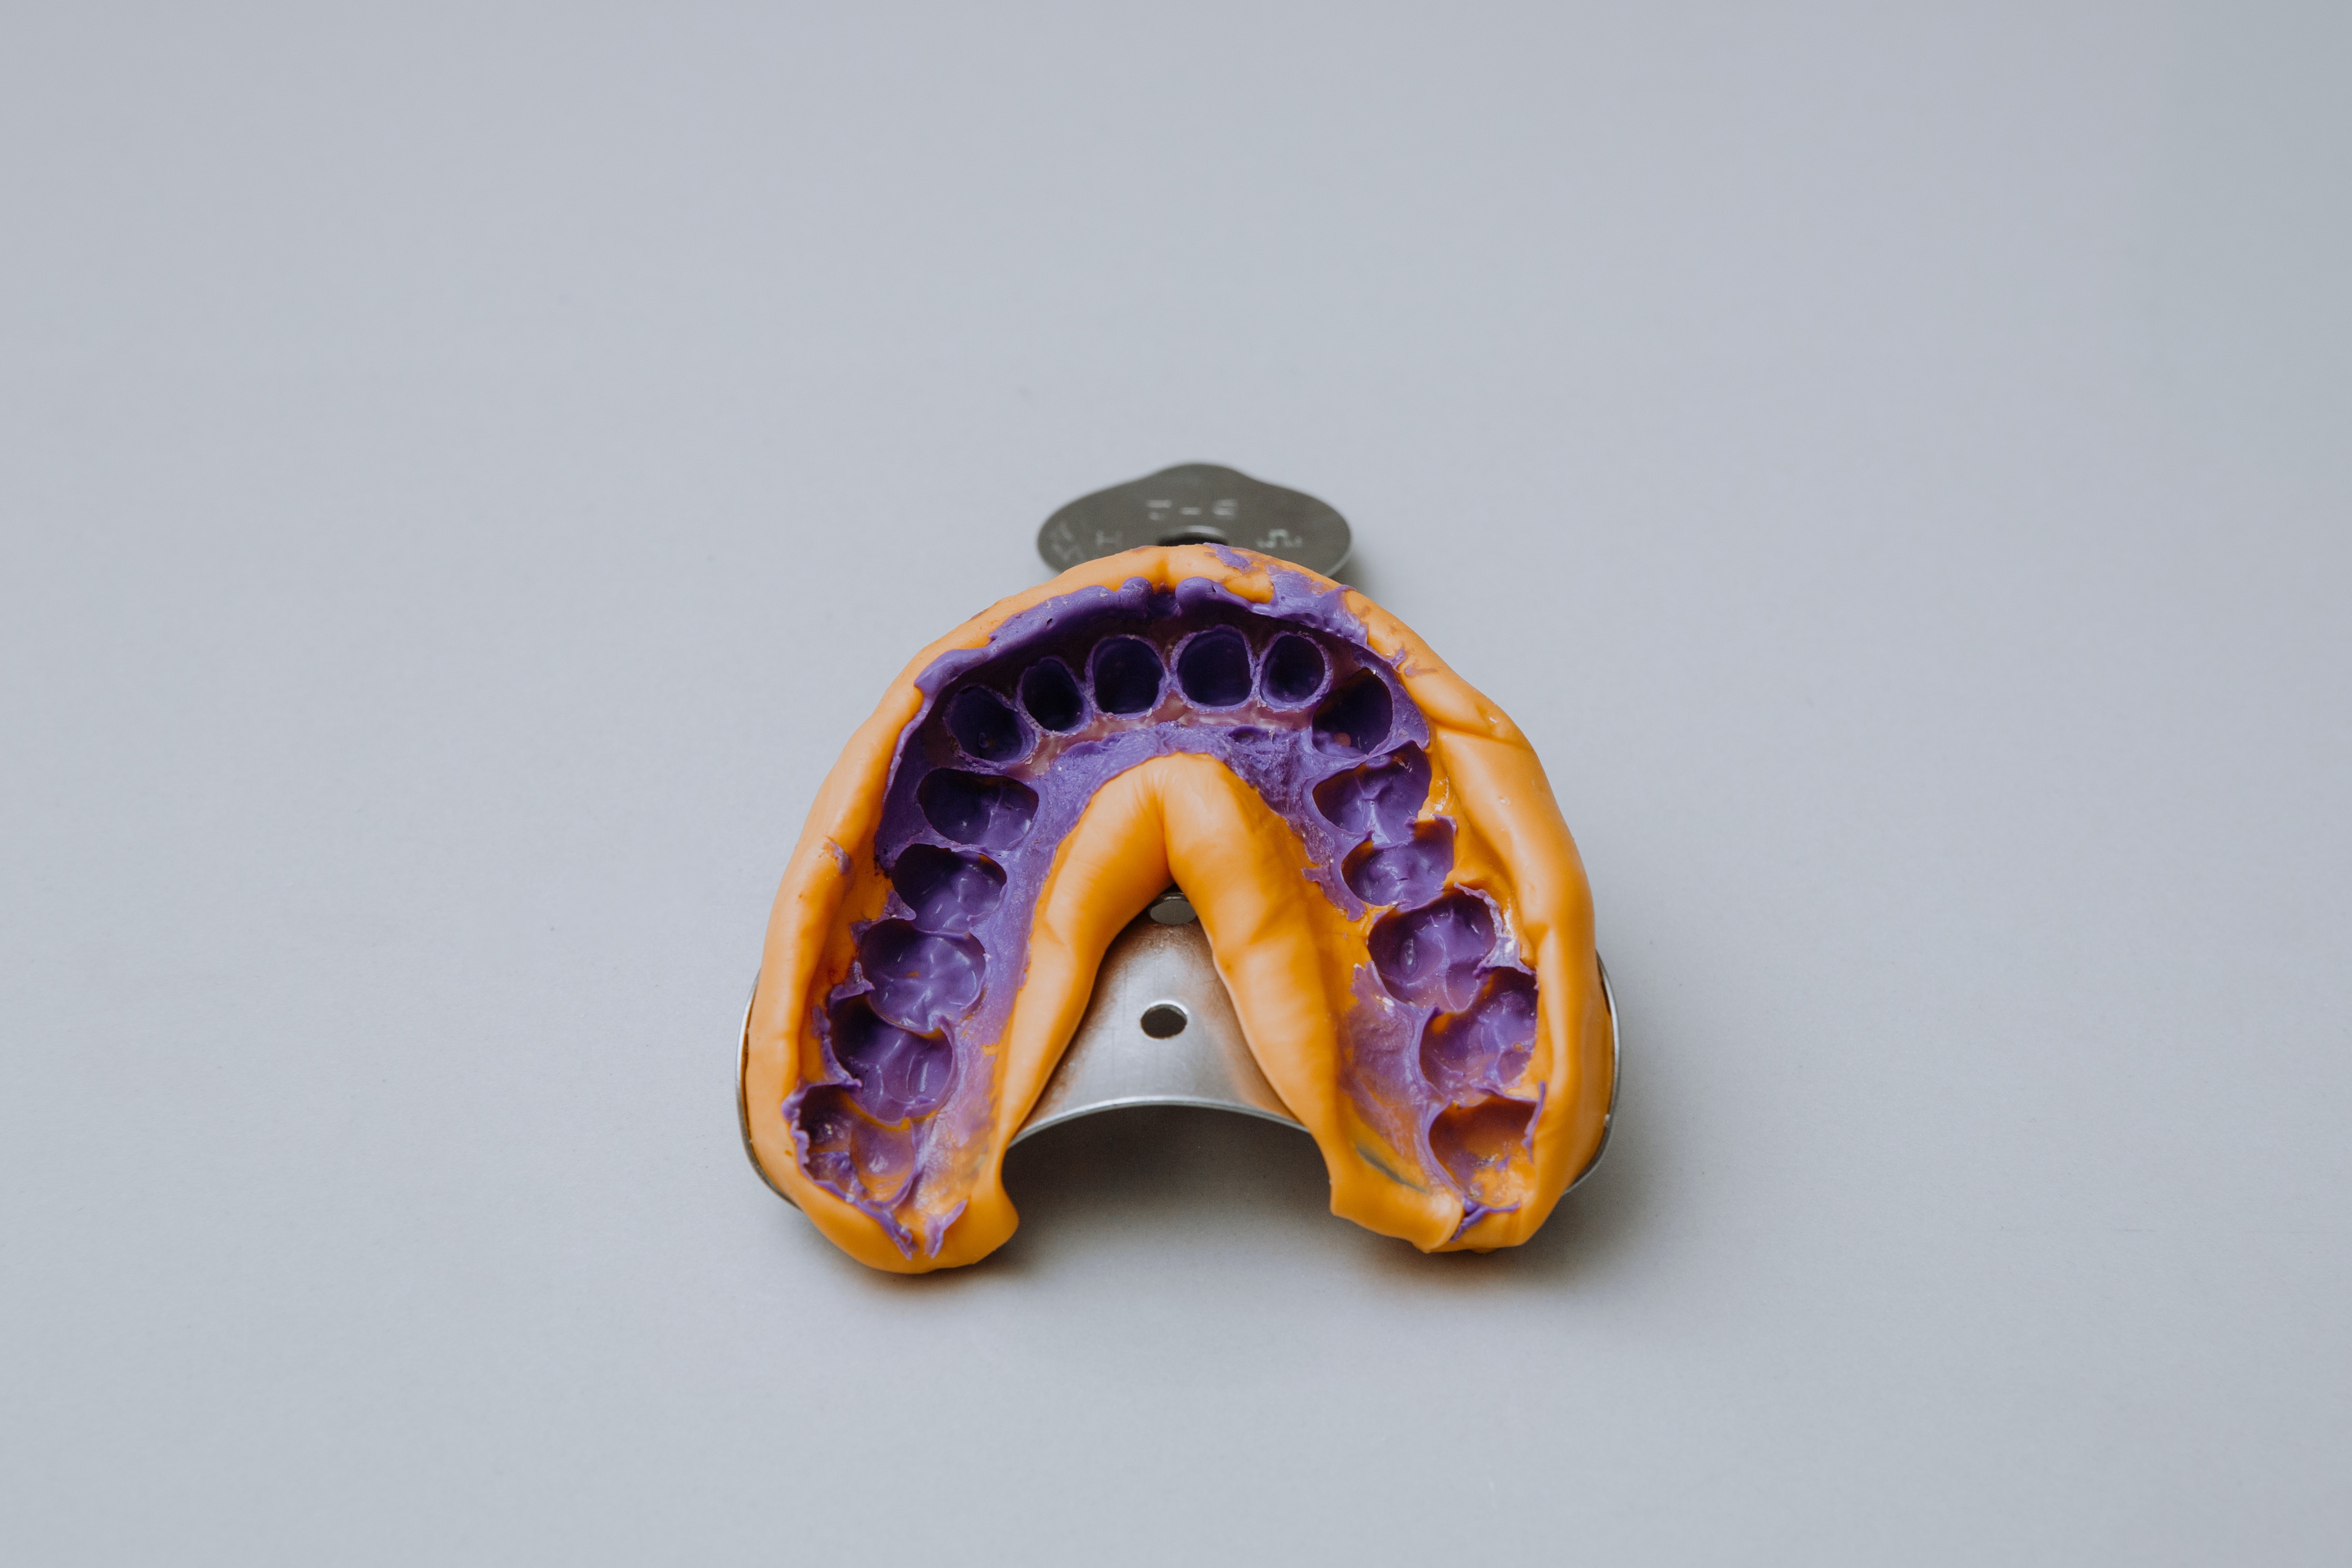 Las impresiones, modelos y registros en la Ortodoncia